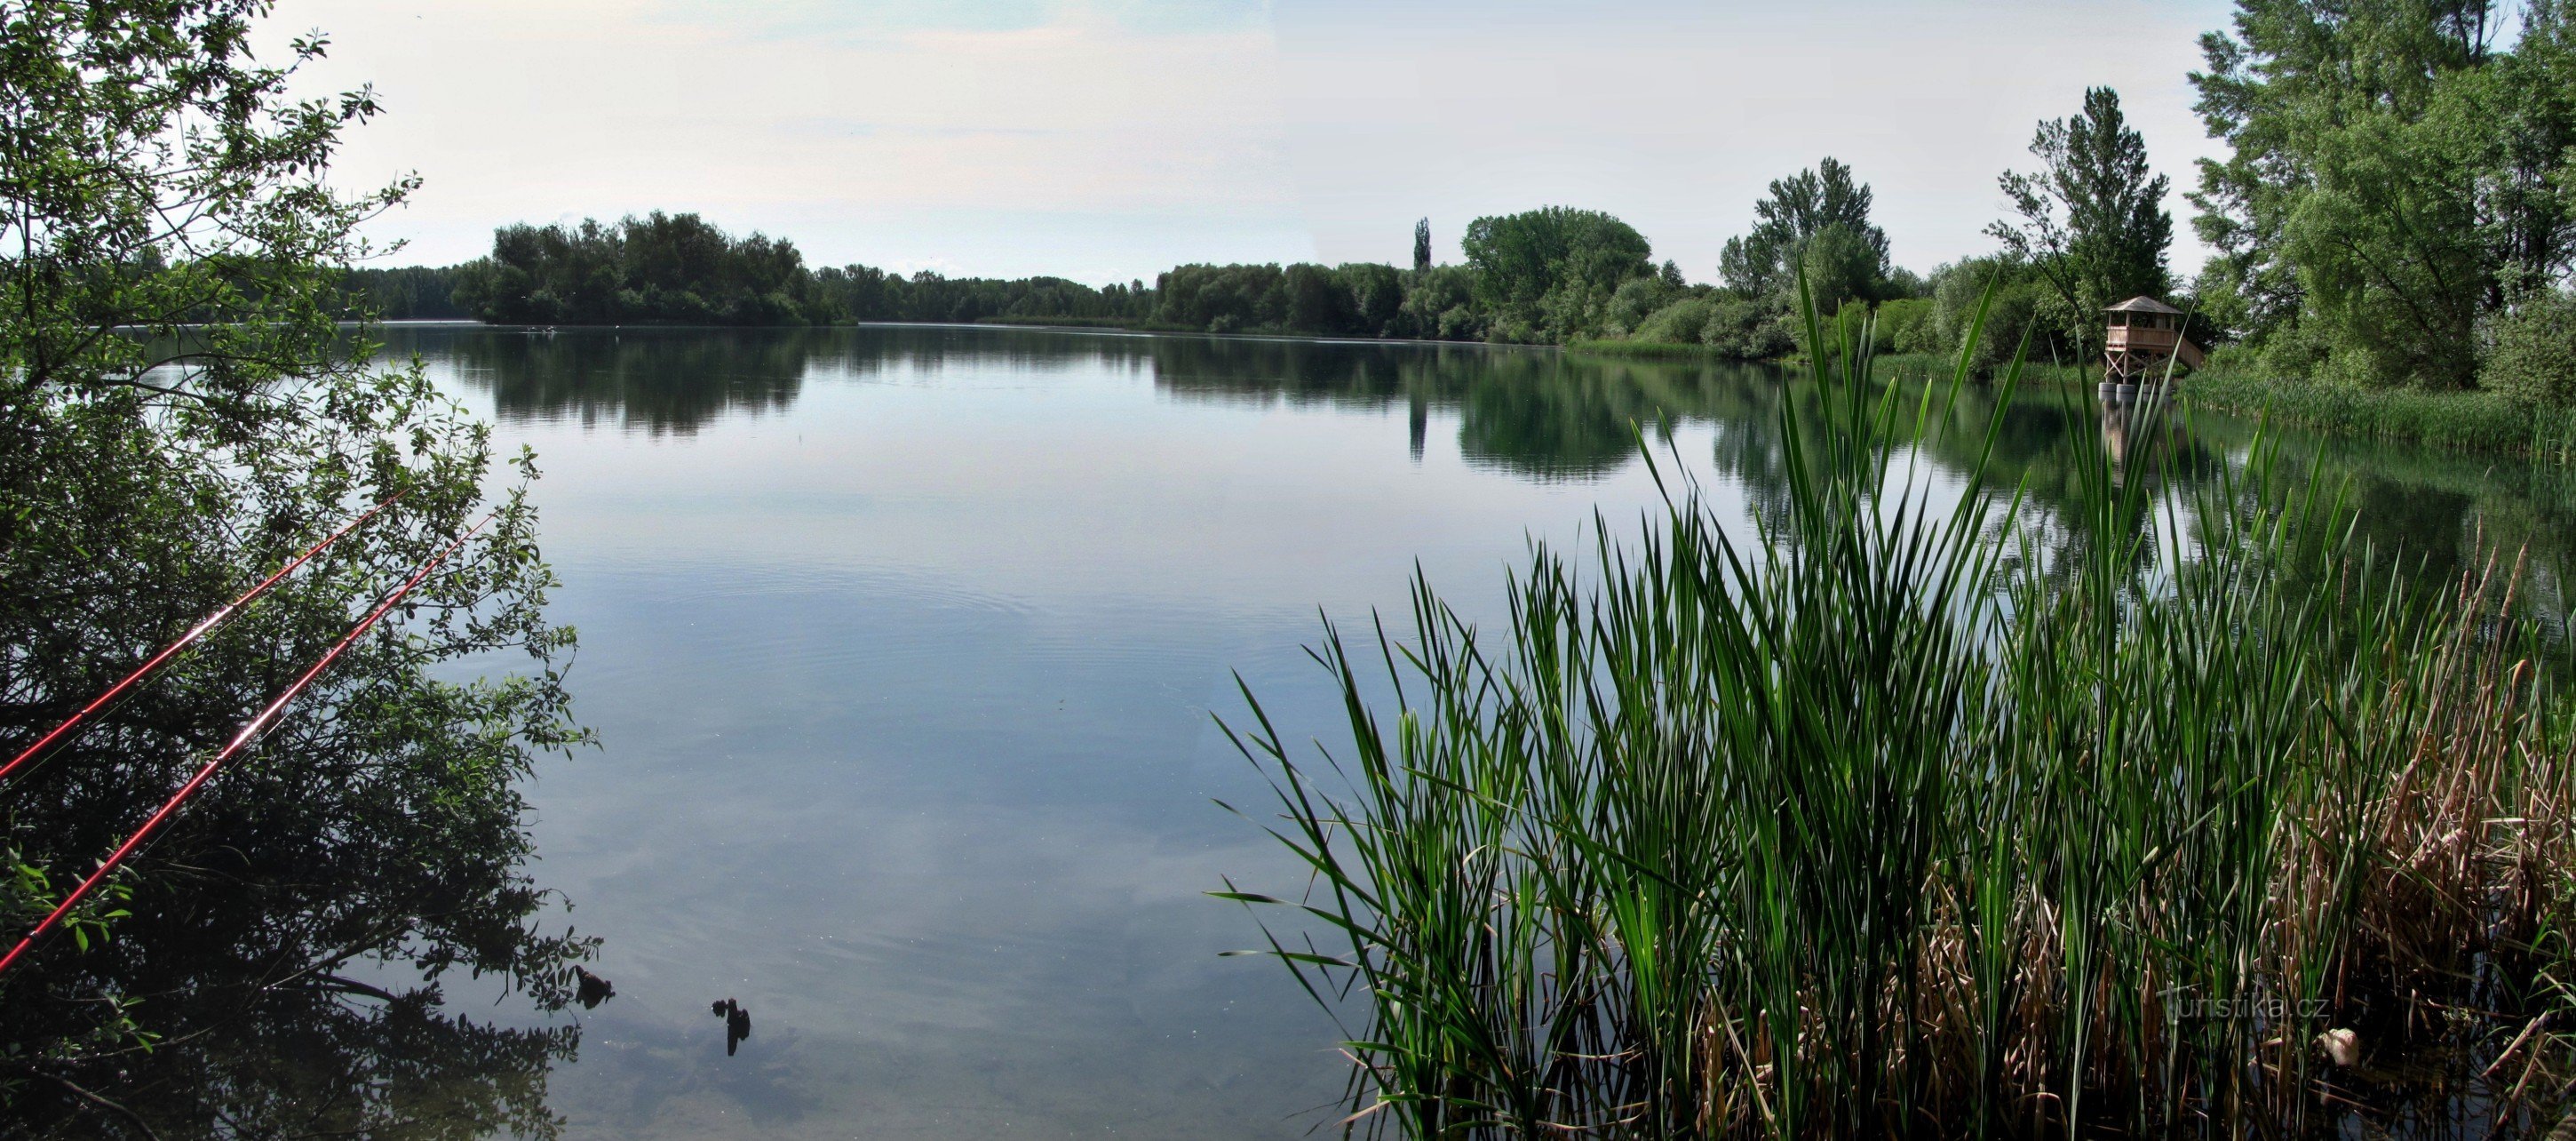 Chomoutov (gần Olomouc) - đài quan sát chim trên Hồ Chomoutov